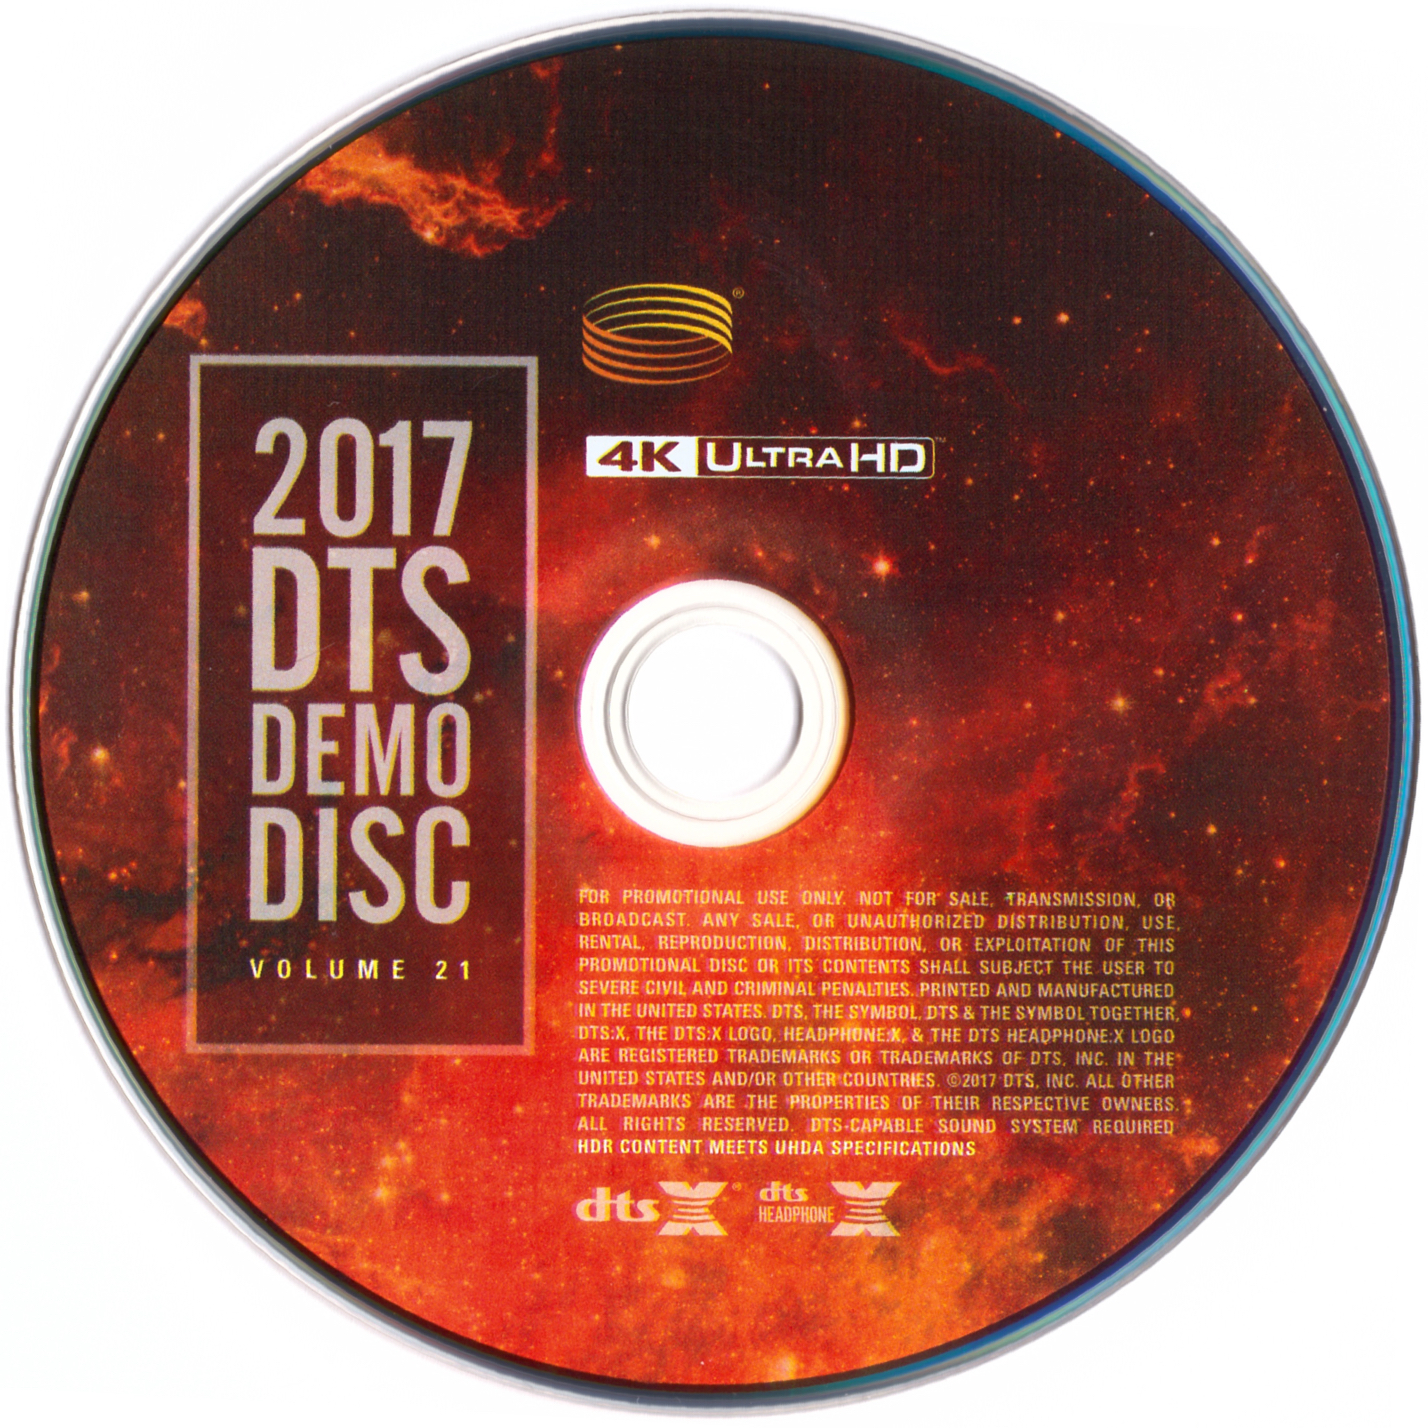 DTS蓝光演示碟 2017 4K UHD DTS Demo Disc Vol.21 H.265 4KUltraHD DTS-X DTS-HDMA 7.1-